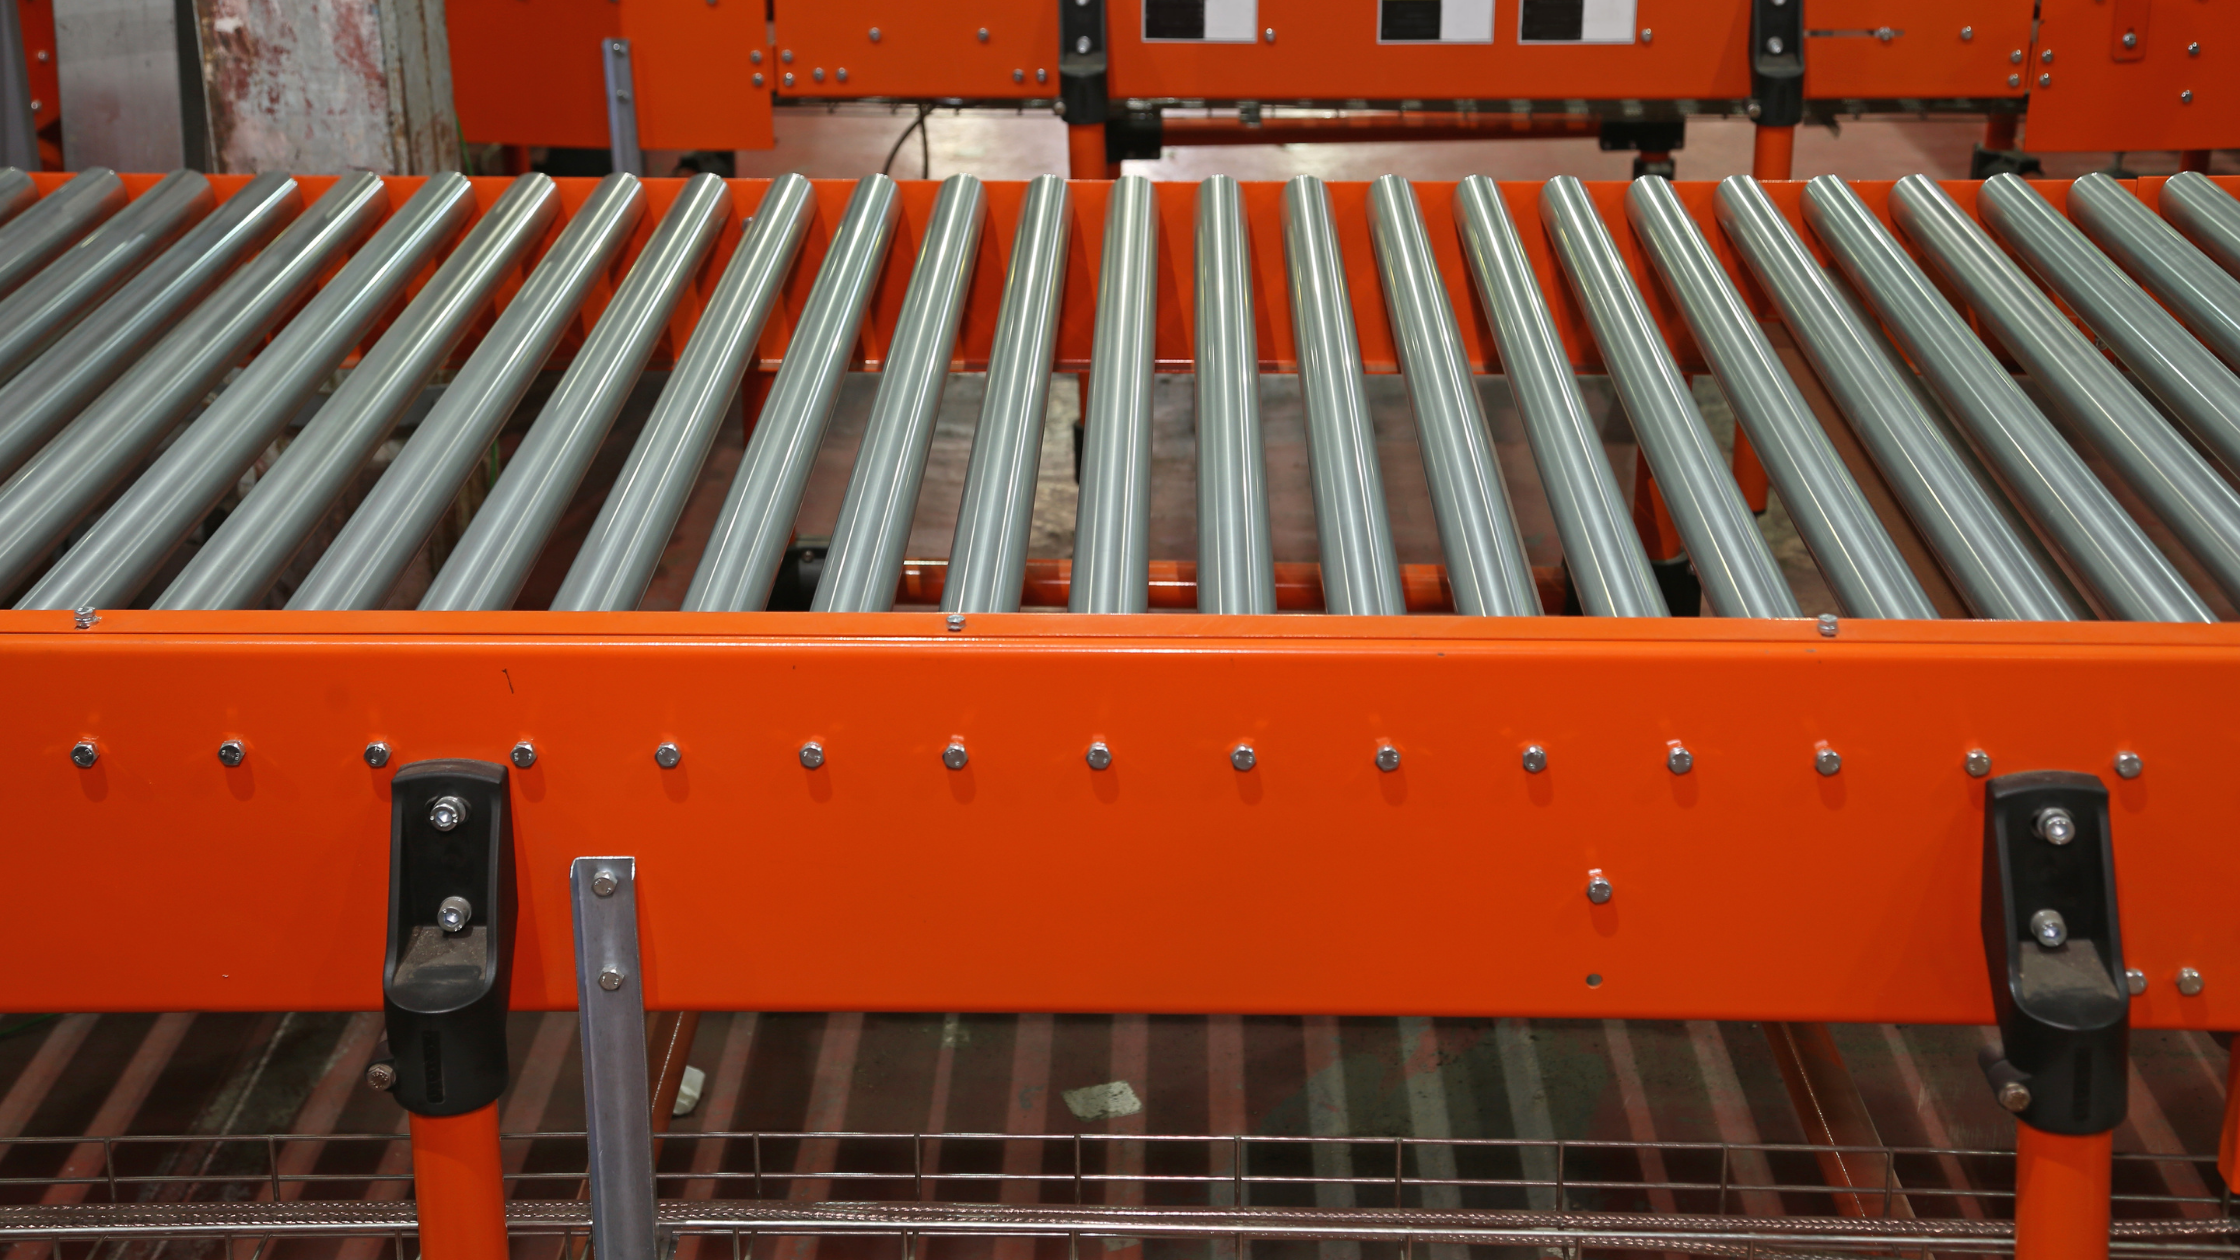 Empty orange conveyor